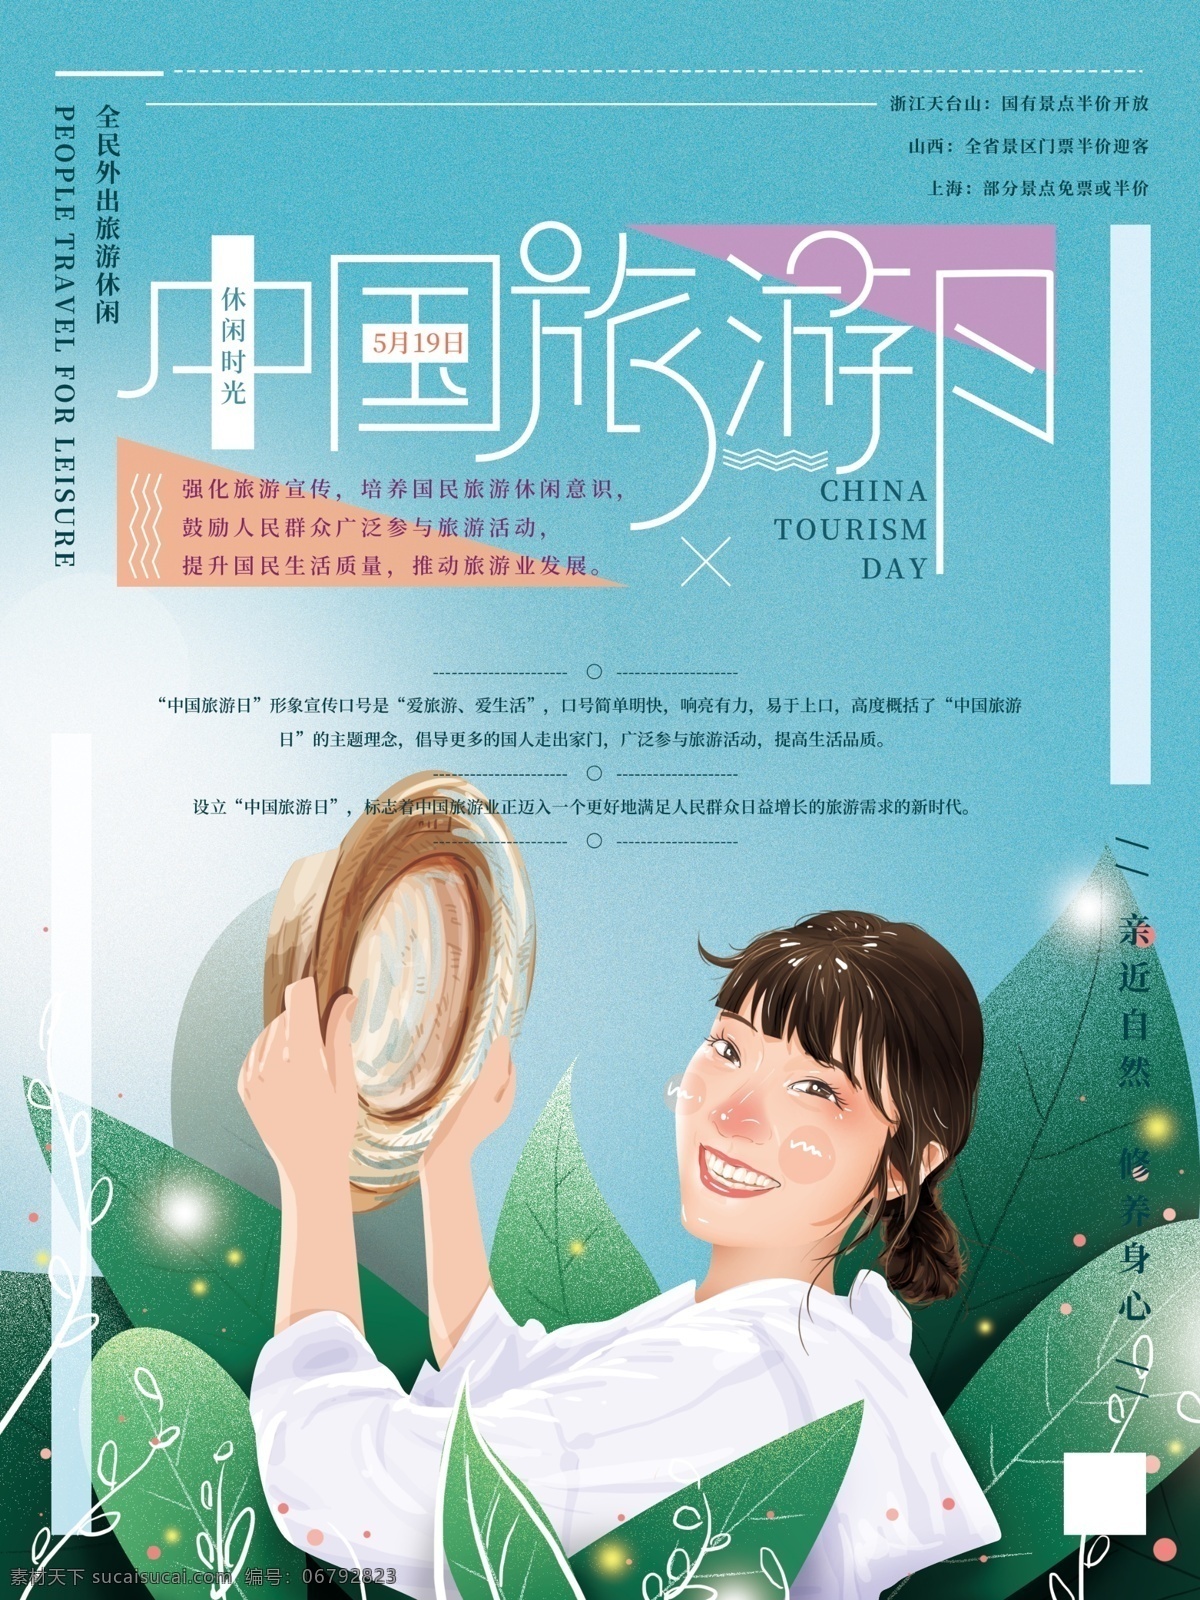 原创 手绘 清新 中国旅游 日 海报 女孩 叶子 自然 天空 帽子 旅游